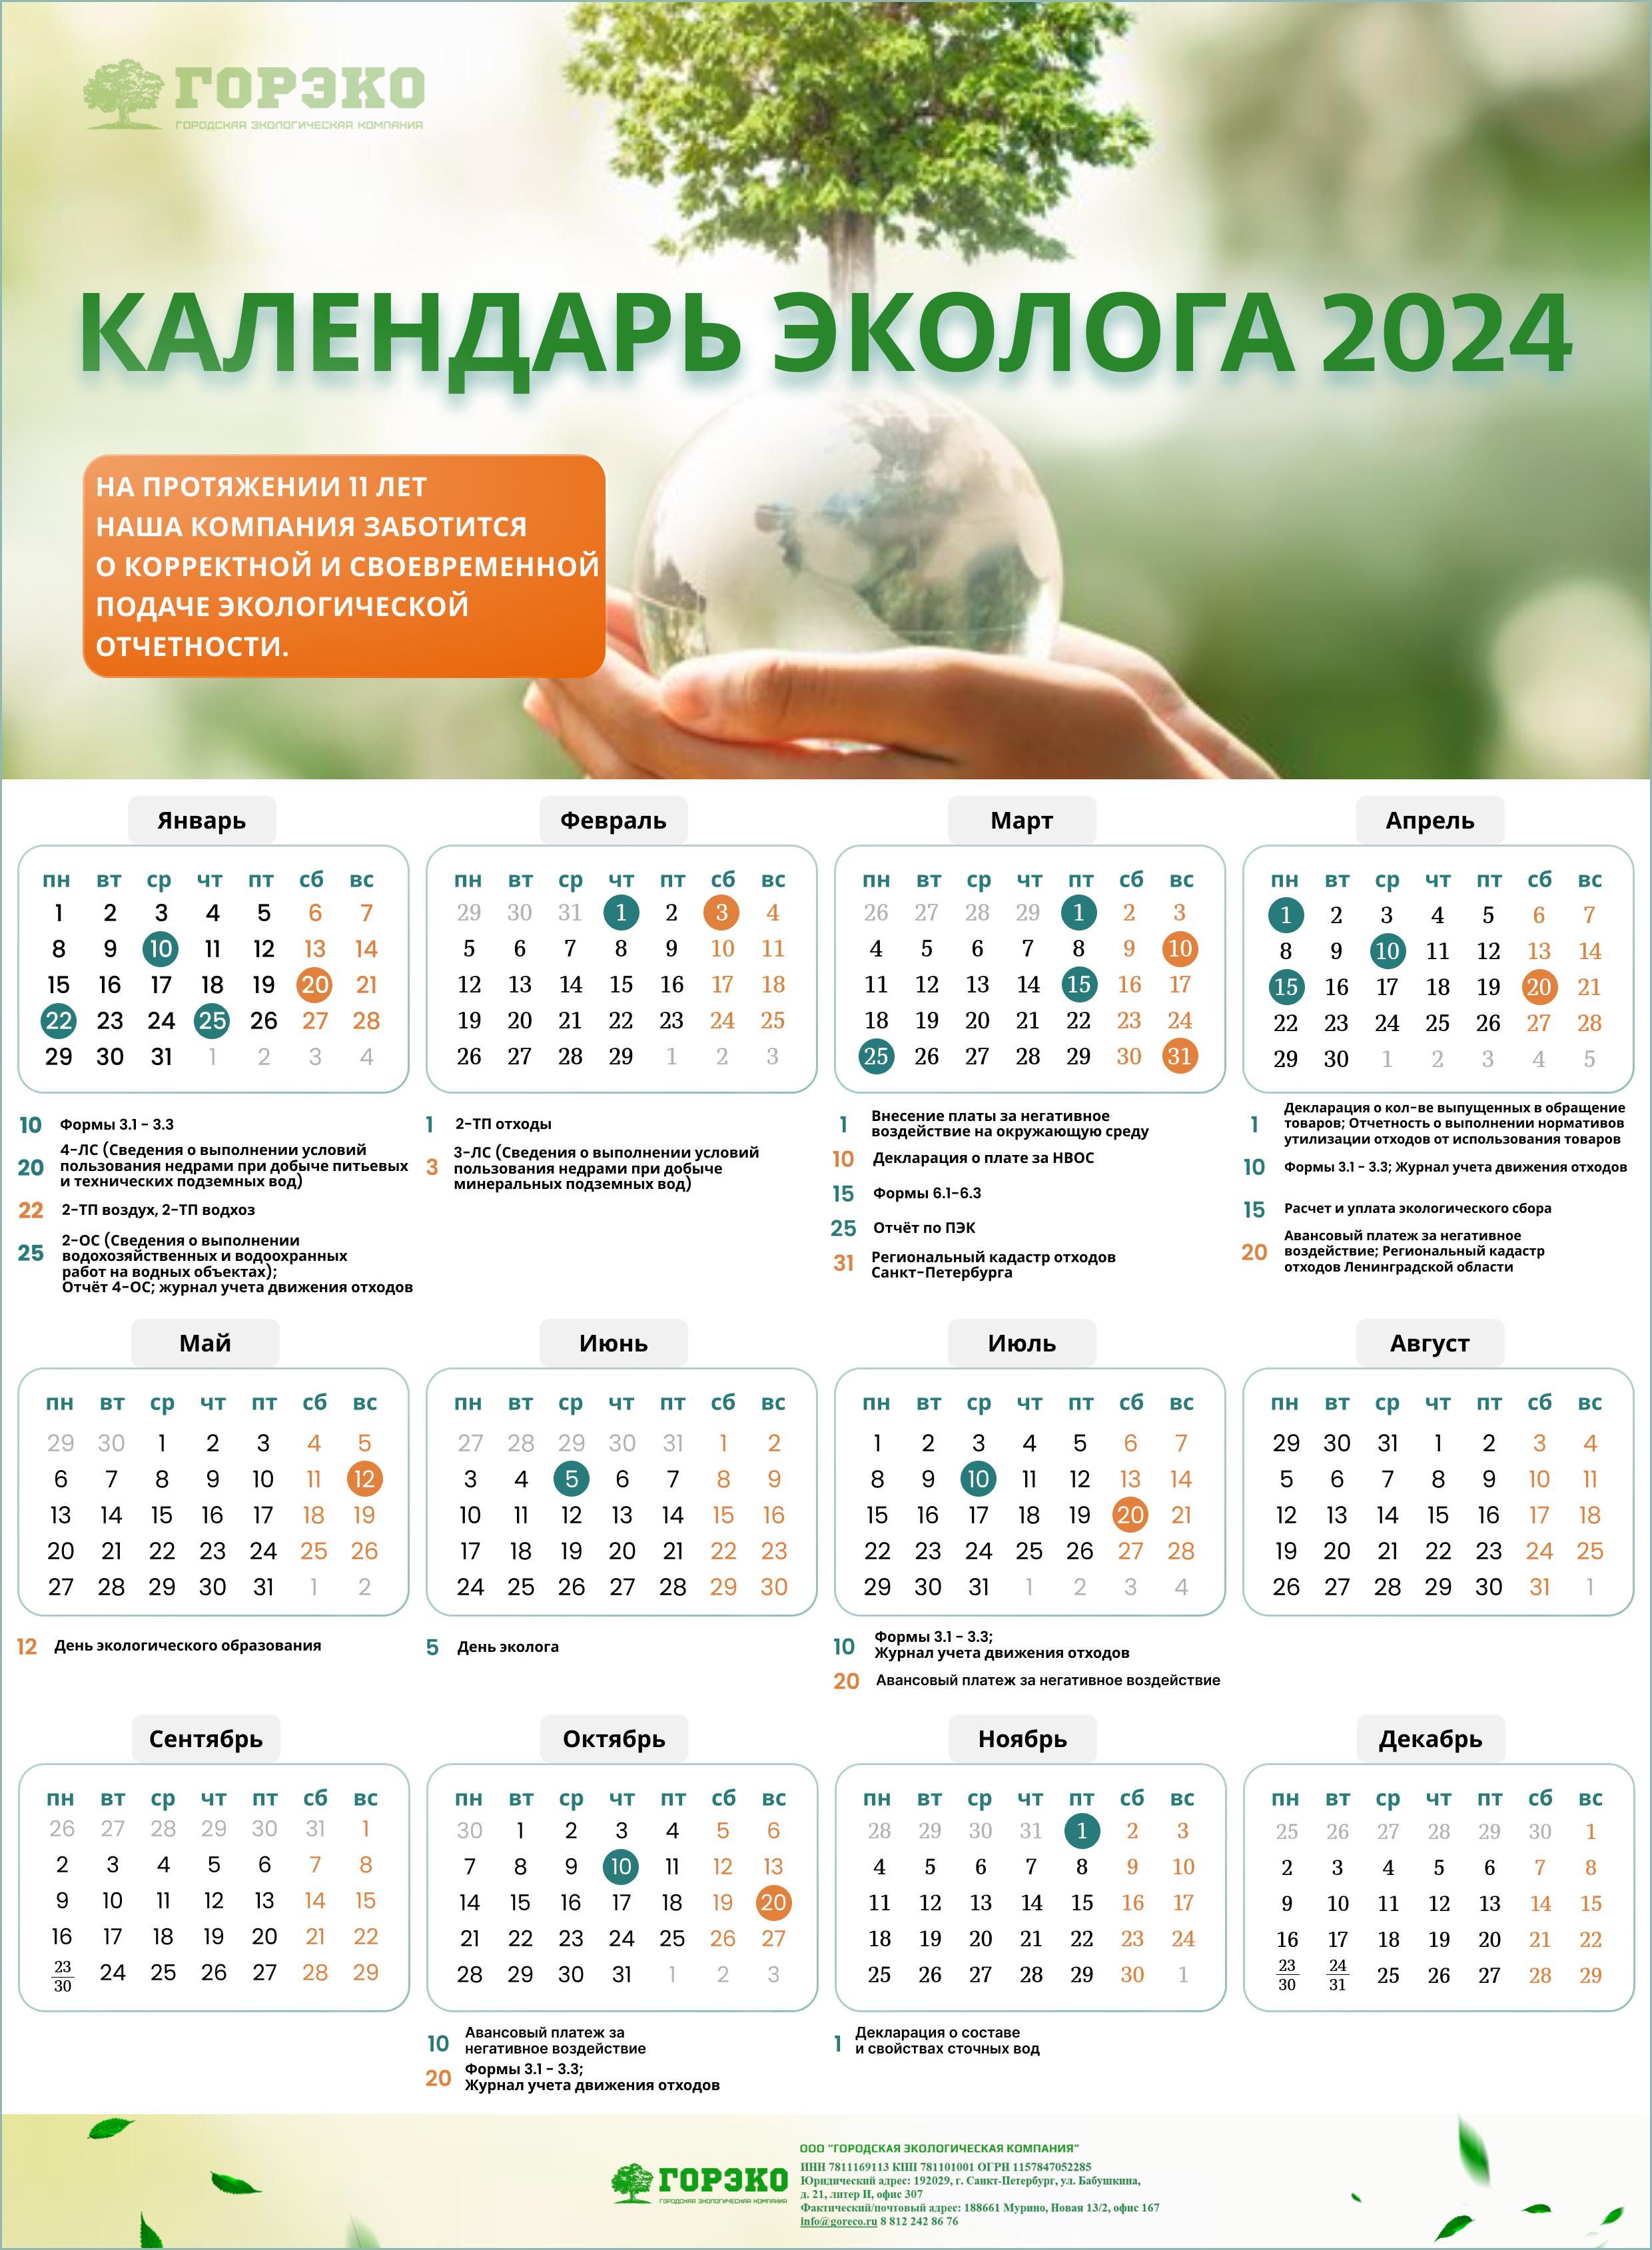 Календарь экологической отчетности в 2024 году